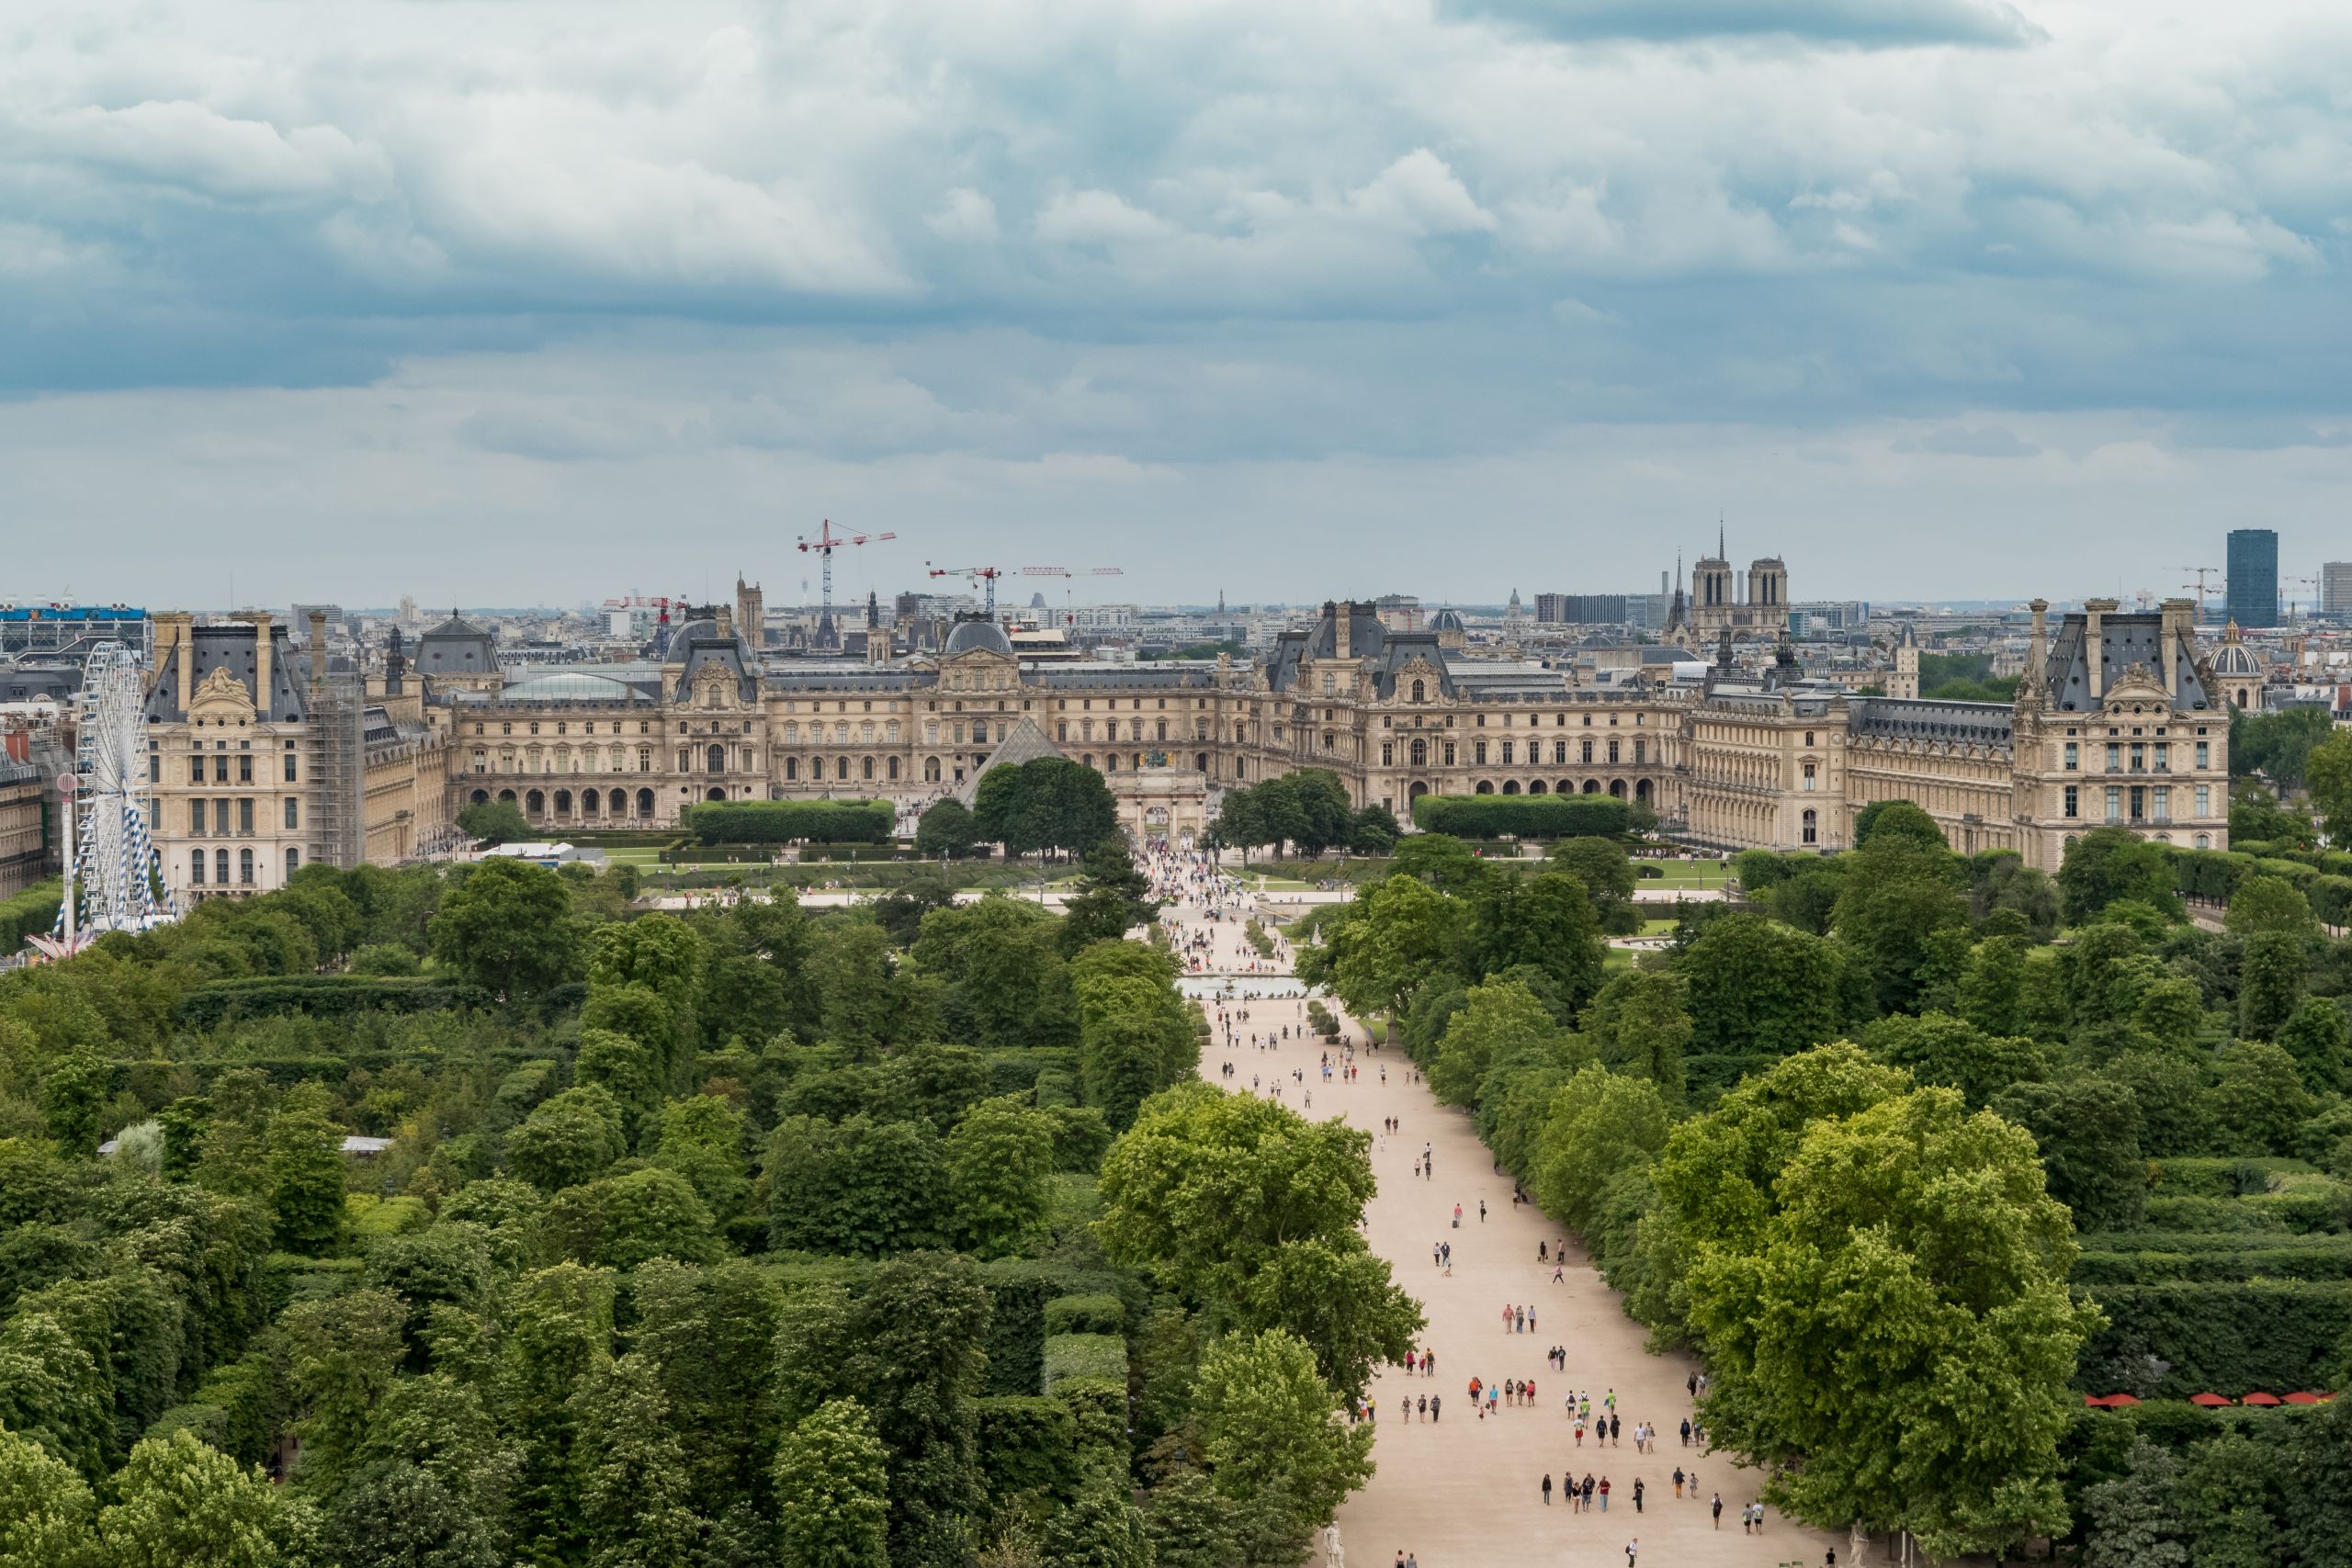 Louvre Museum from the Roue de Paris 11 July 2016